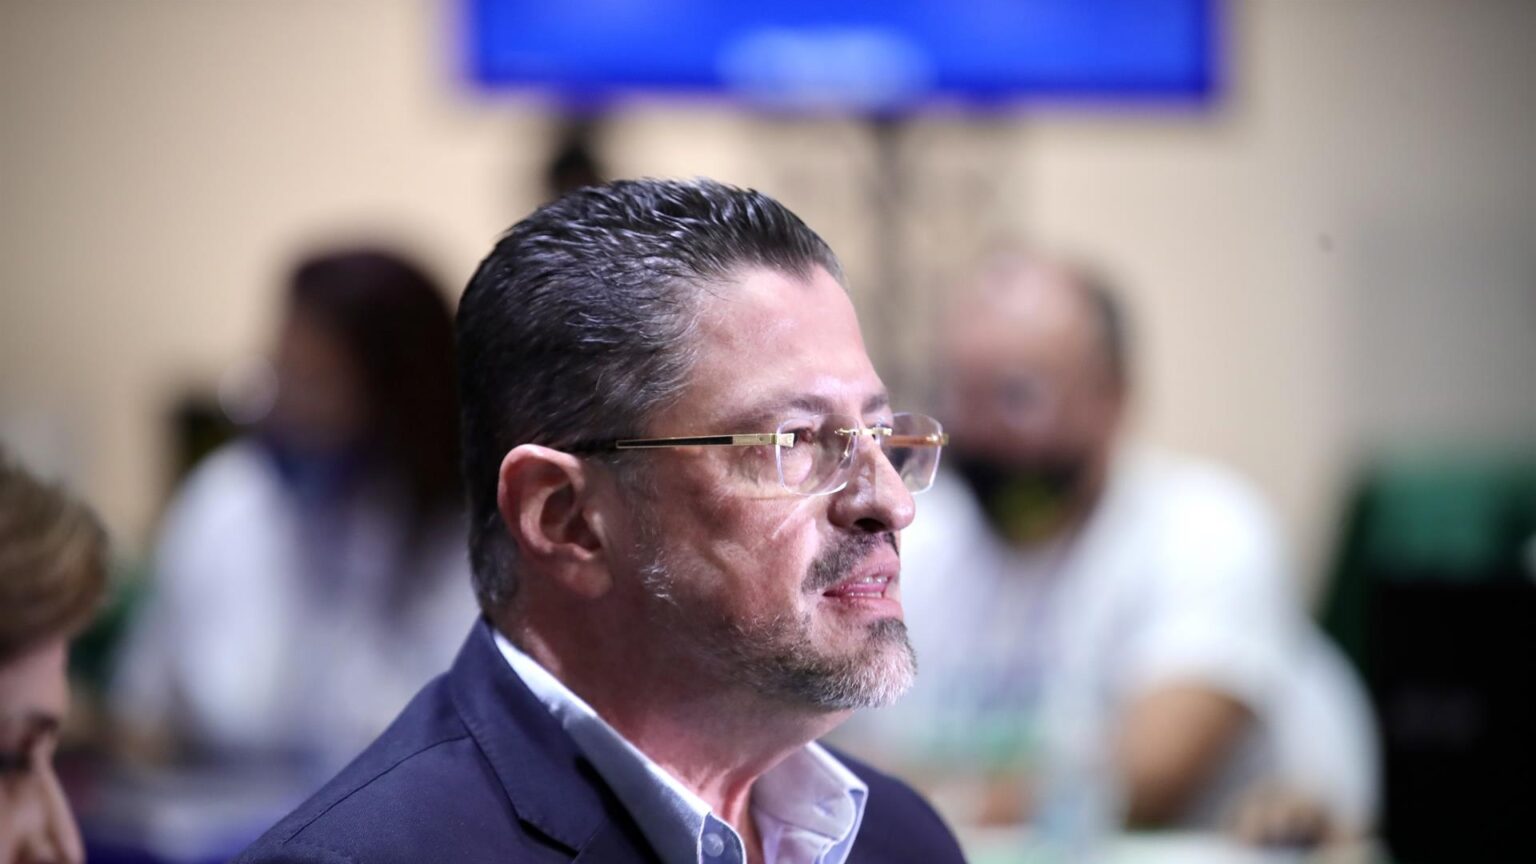 Rodrigo Chaves gana las elecciones presidenciales de Costa Rica